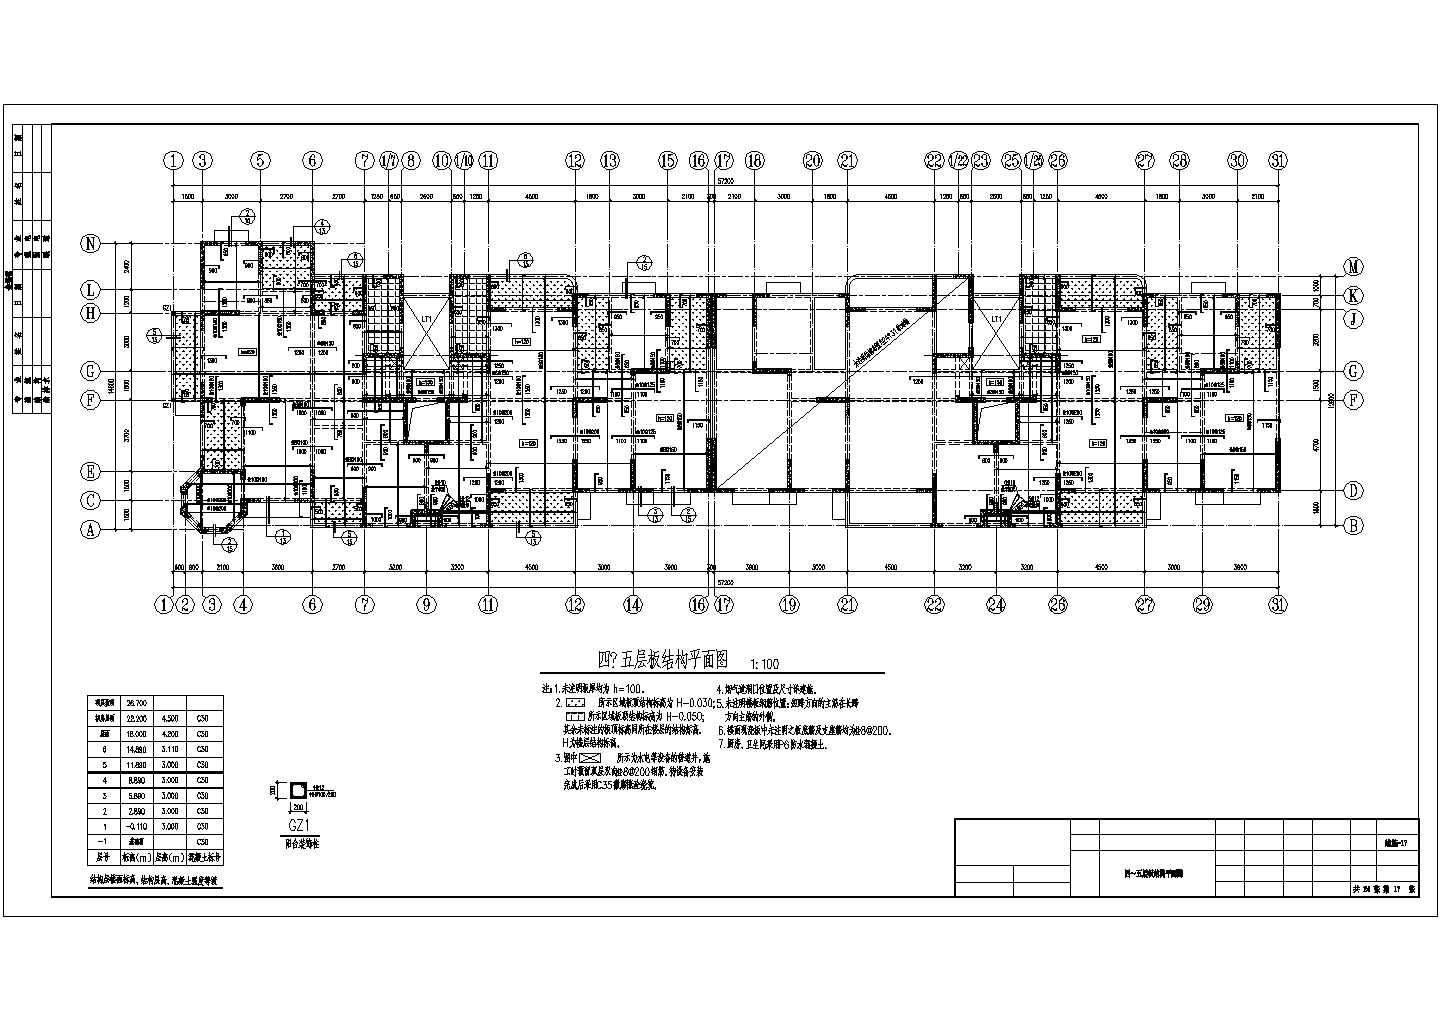 六层纯剪力墙住宅结构施工图(筏基)